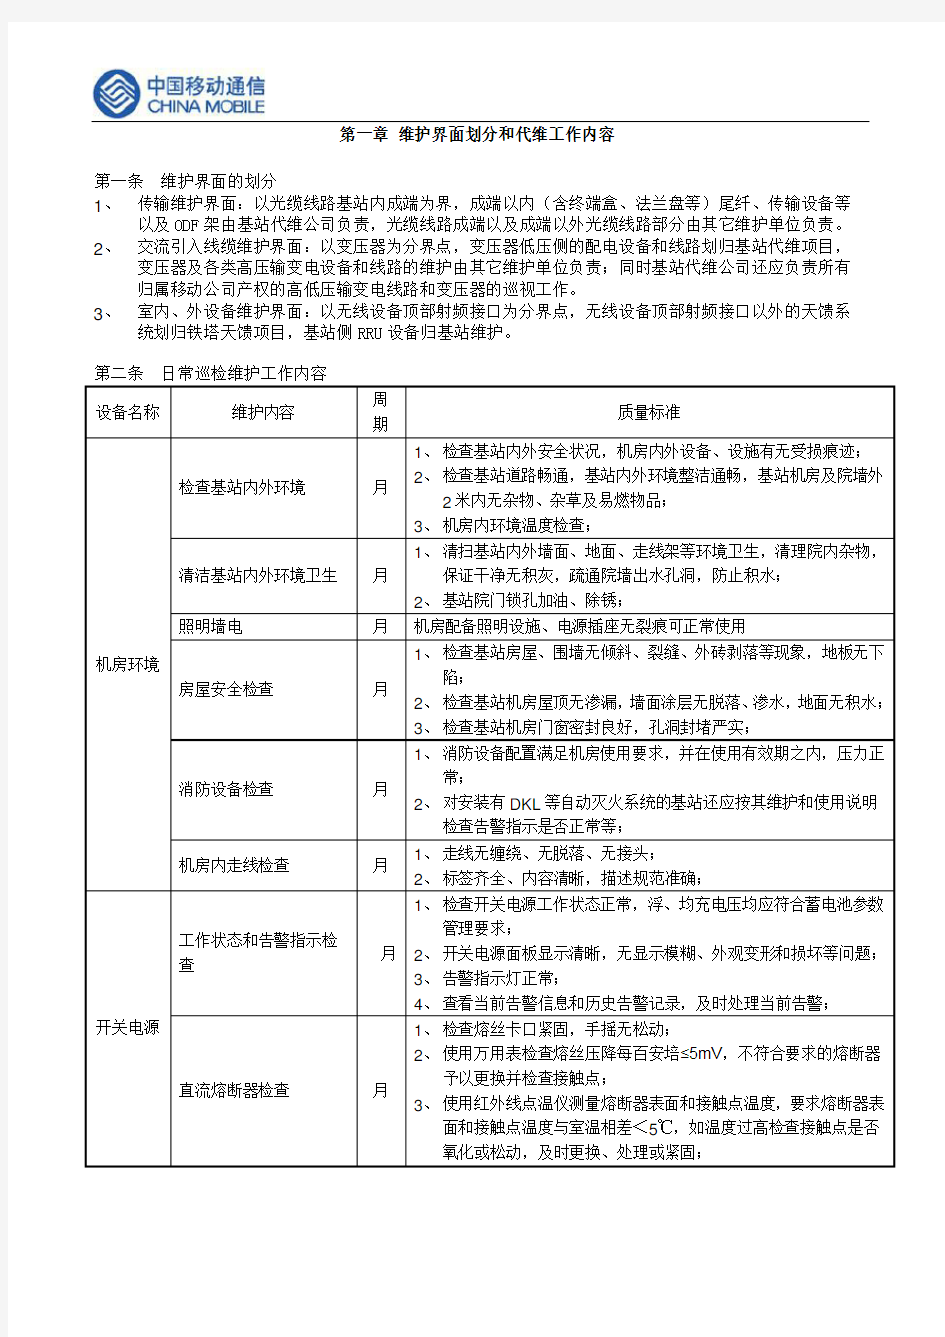 中国移动网络代维质量规范(上海)-基站及配套设备分册